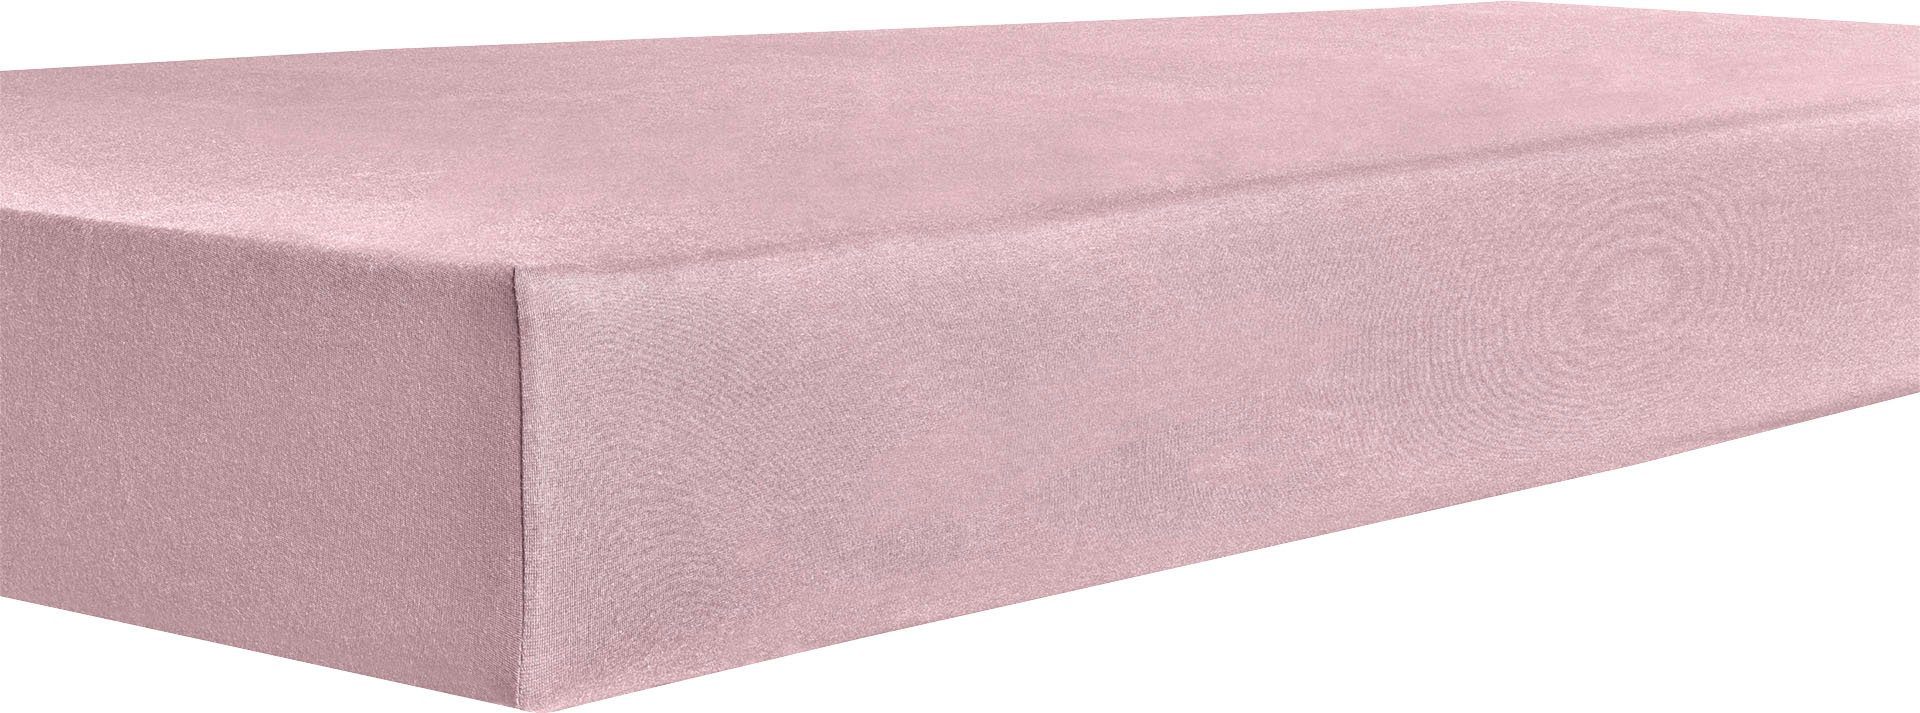 kneer hoeslaken organic-cotton-stretch gots-gecertificeerd - duurzaam van bio-katoen (1 stuk) roze